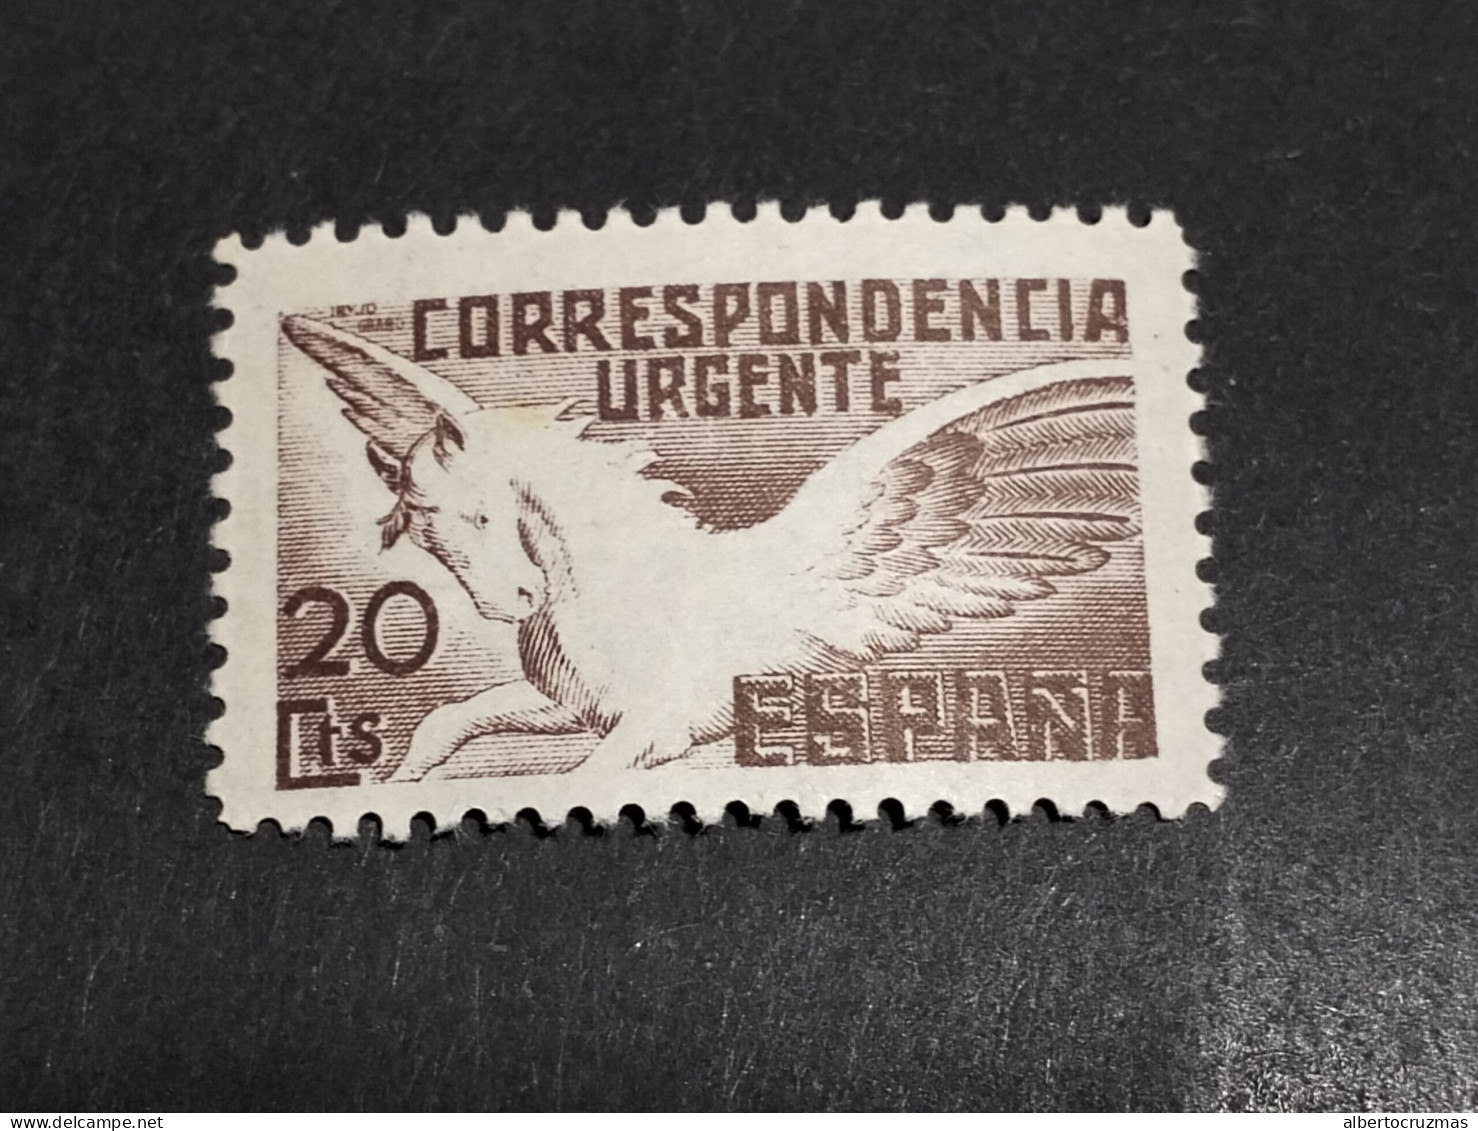 España SELLOS Pegaso Correo Urgente Edifil 861 SELLOS Año 1938 NUEVOS *** MNH - Unused Stamps